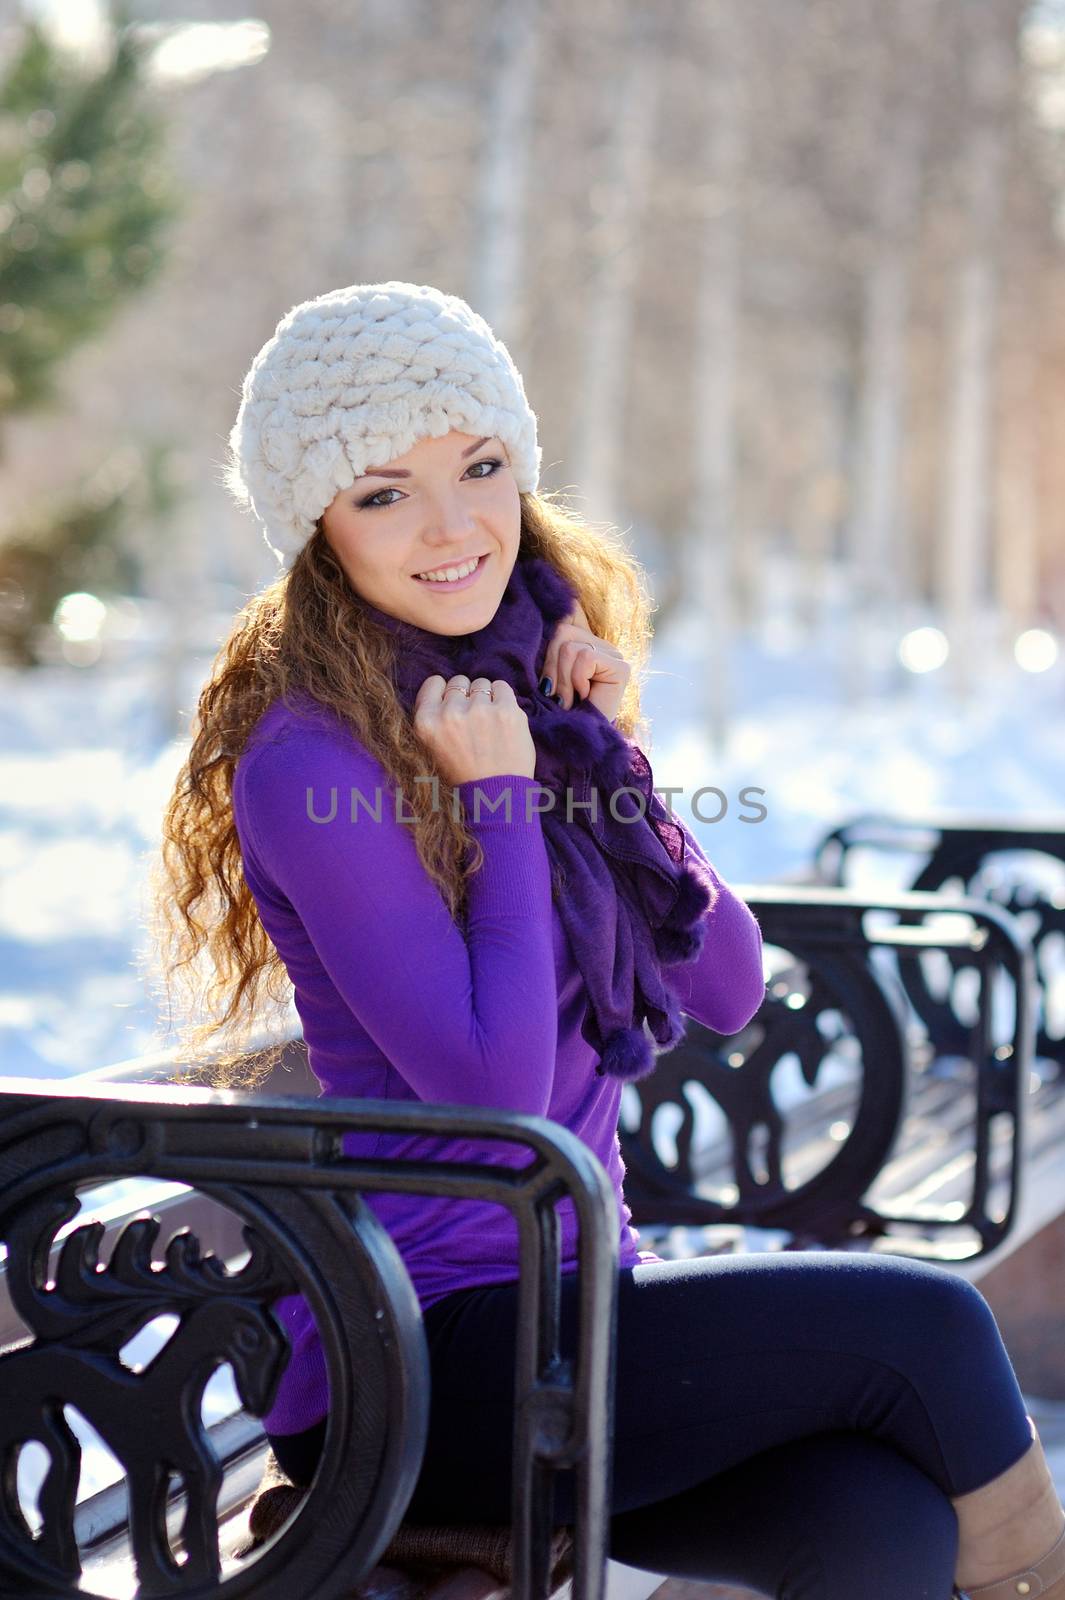 Beautiful brunette girl on a walk in winter.